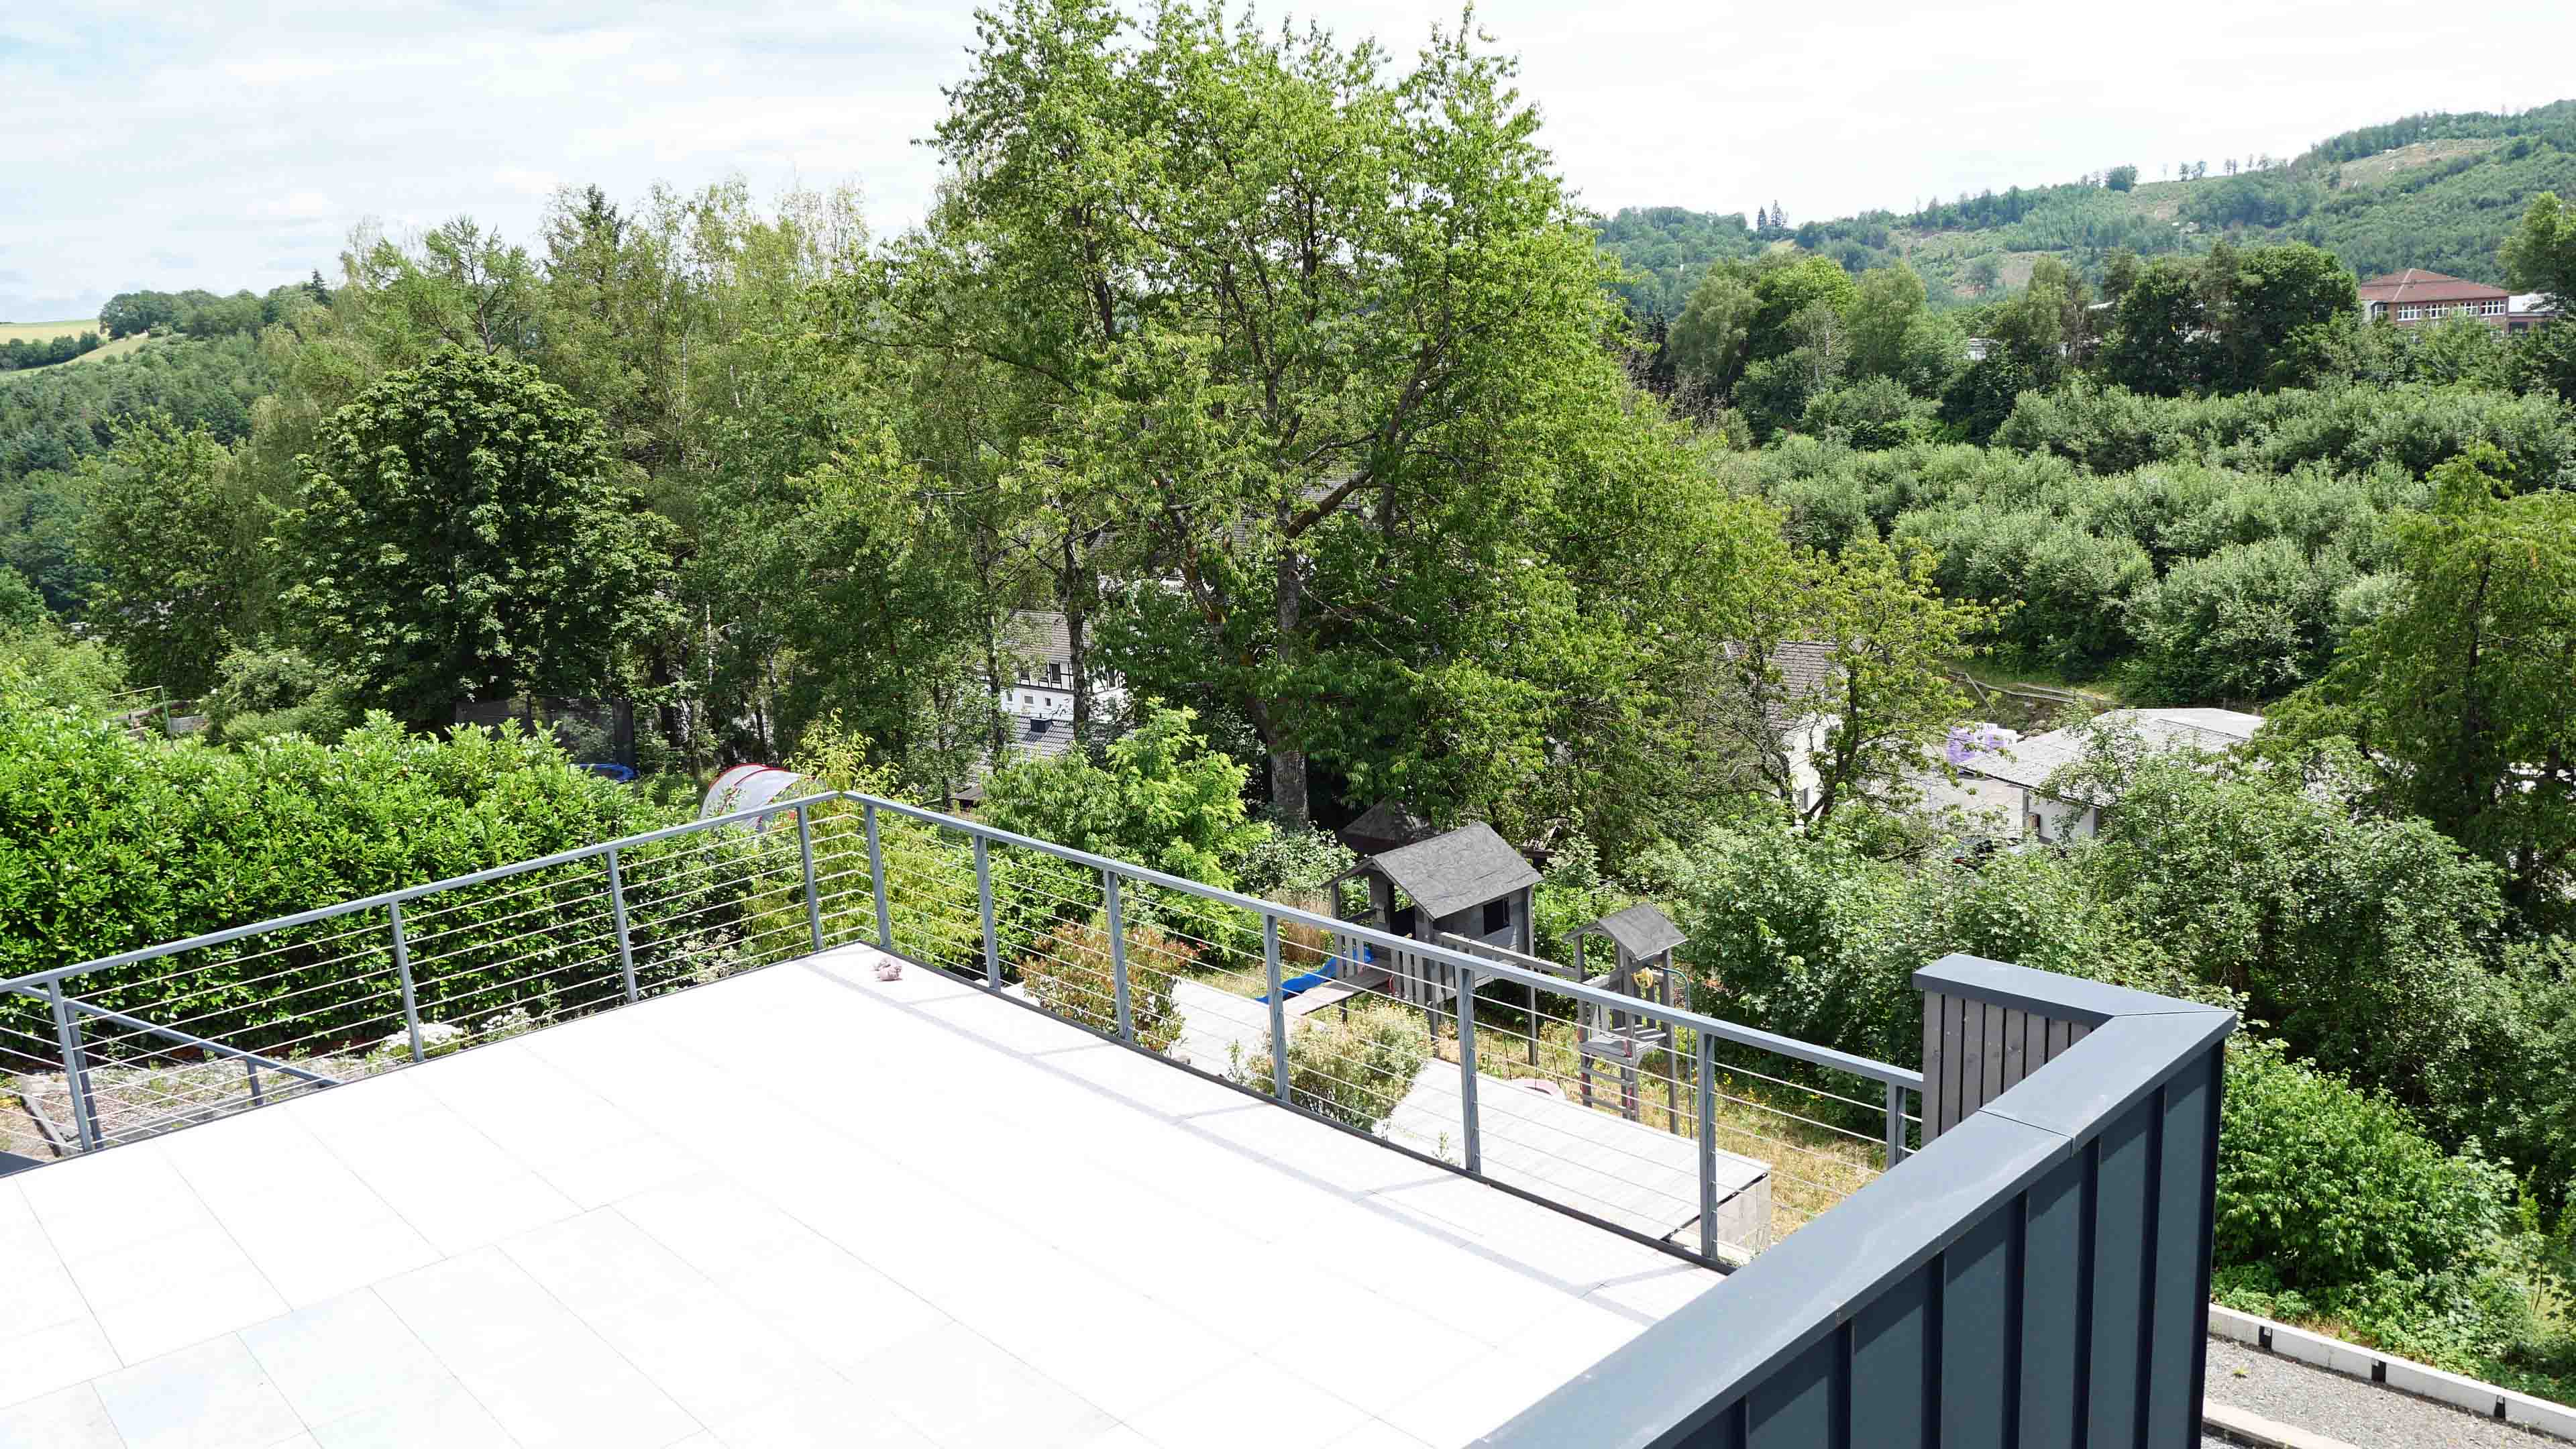 Morsbach: Topsanierter Bungalow mit Garage und herrlicher Terrasse, 54 m² große Terrasse mit herrlichem Blick